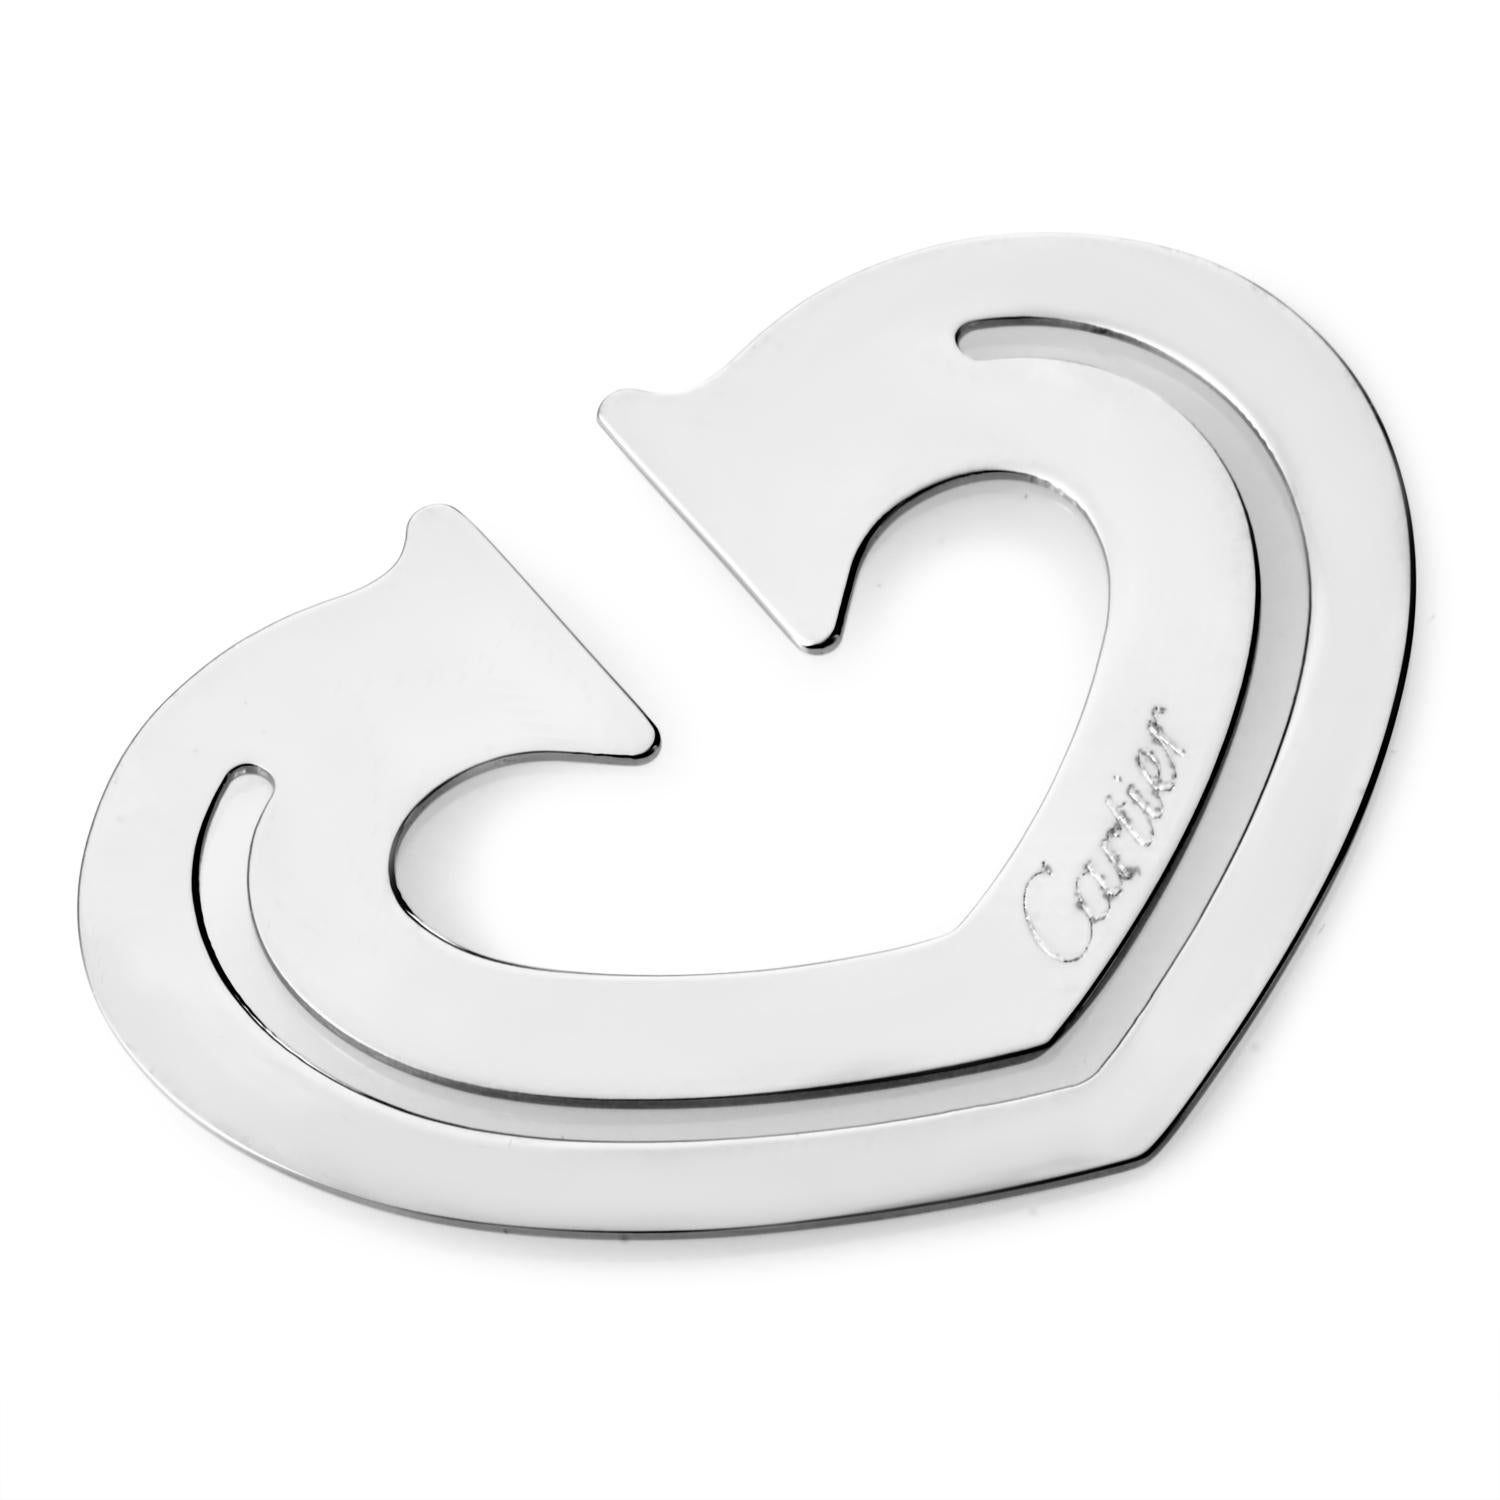 Ce marque-page Cartier en forme de cœur est un bijou en acier inoxydable qui s'intègre parfaitement à votre style de vie.